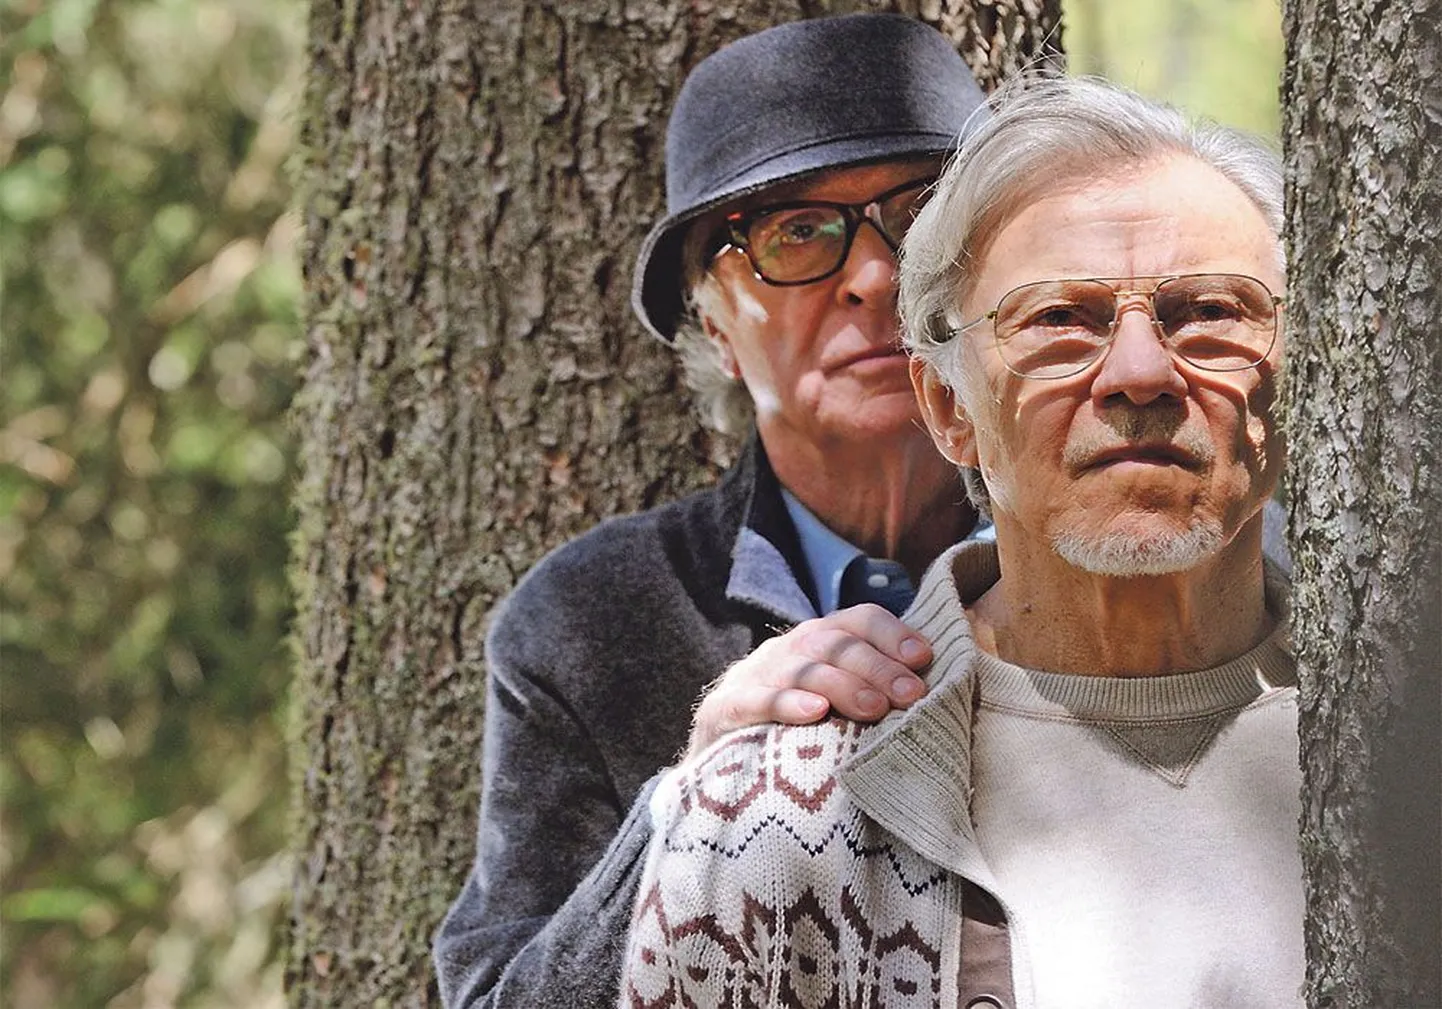 Старики-разбойники: композитор Фред (Майкл Кейн) и режиссер Мик (Харви Кейтель), 
легенды своего времени, наблюдают 
за течением жизни.